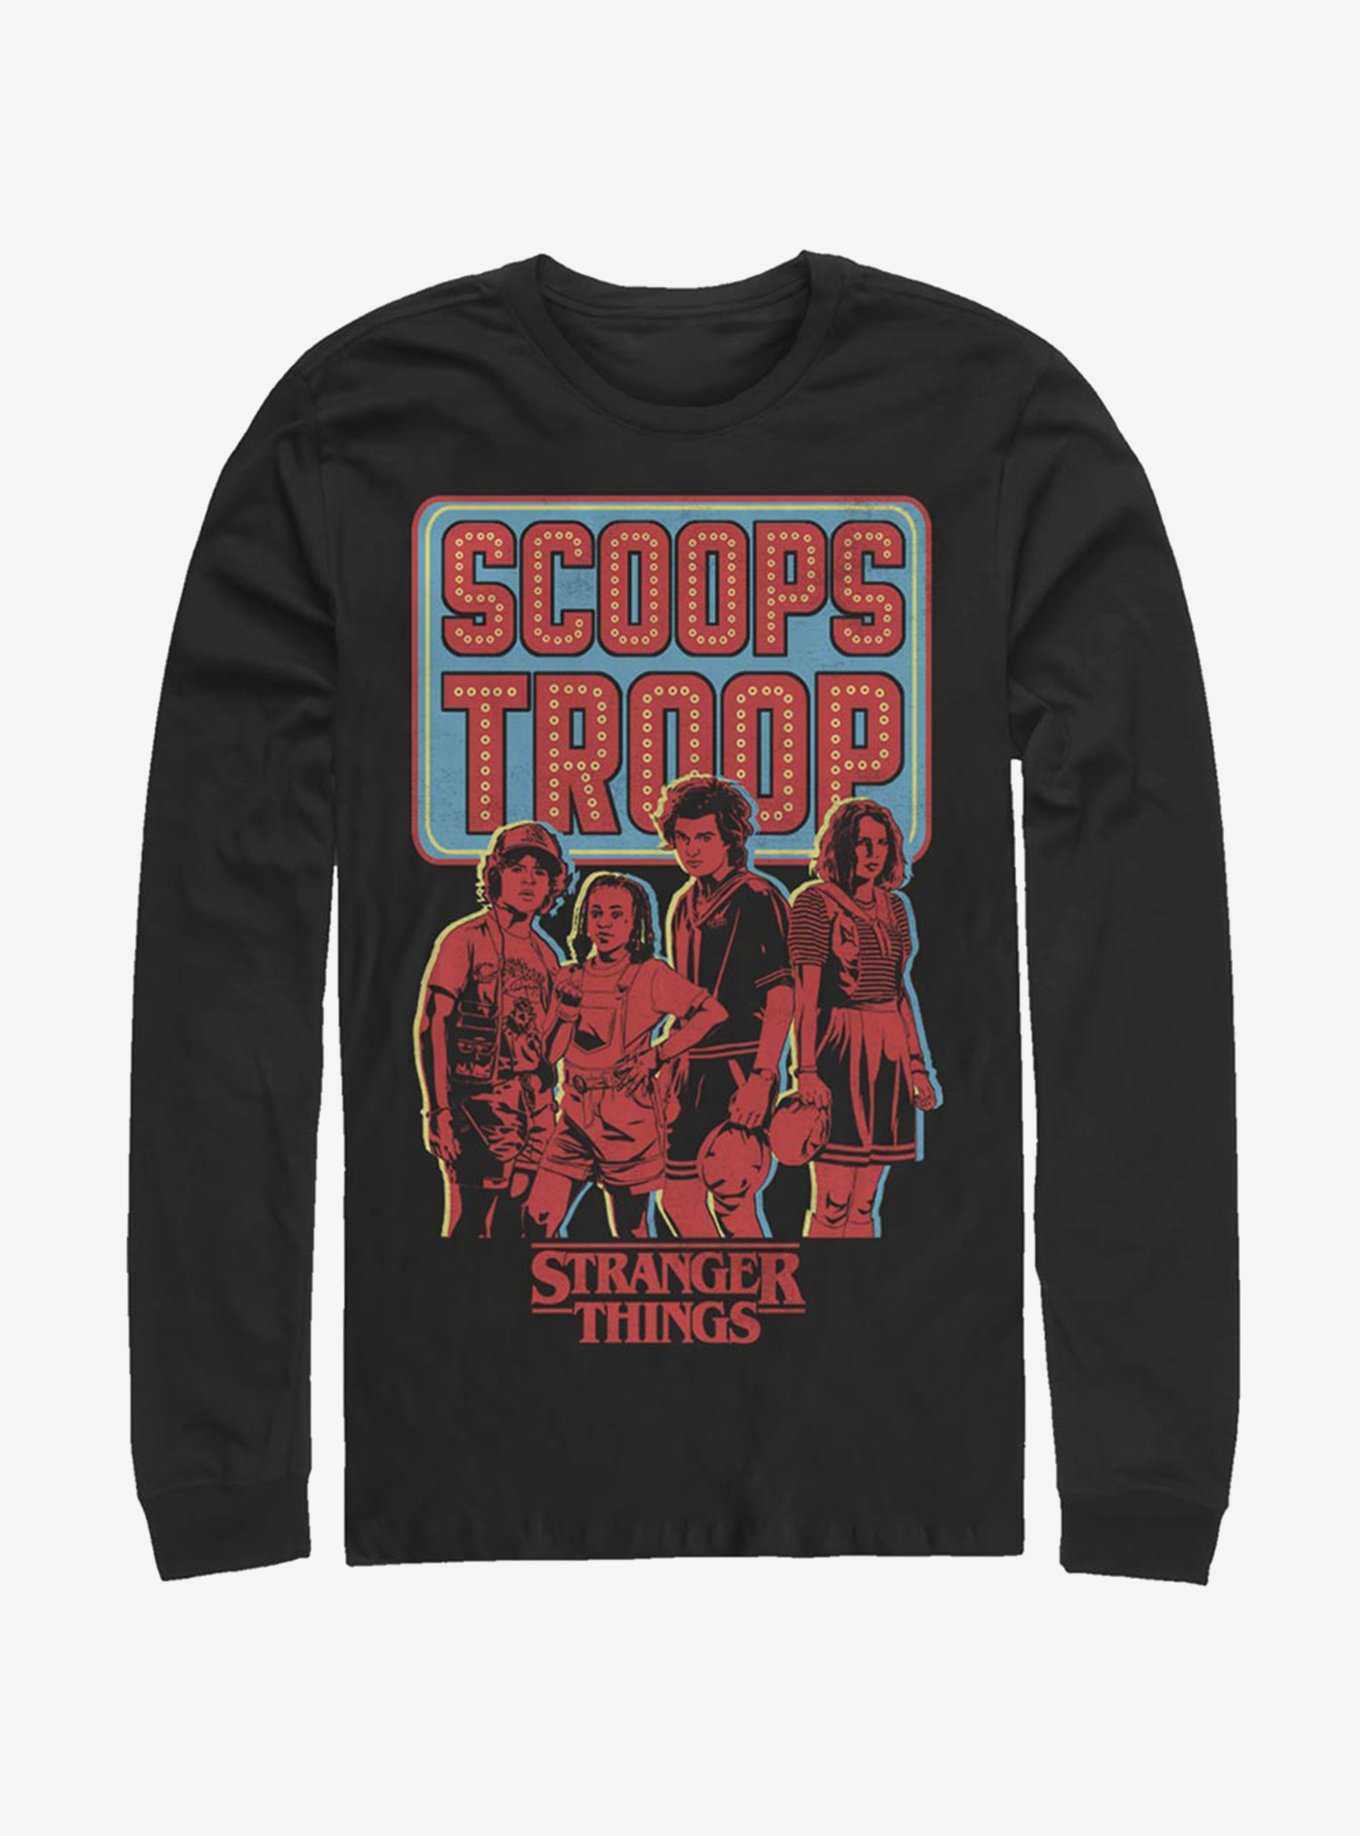 Stranger Things Scoops Troop In Red Long-Sleeve T-Shirt, , hi-res